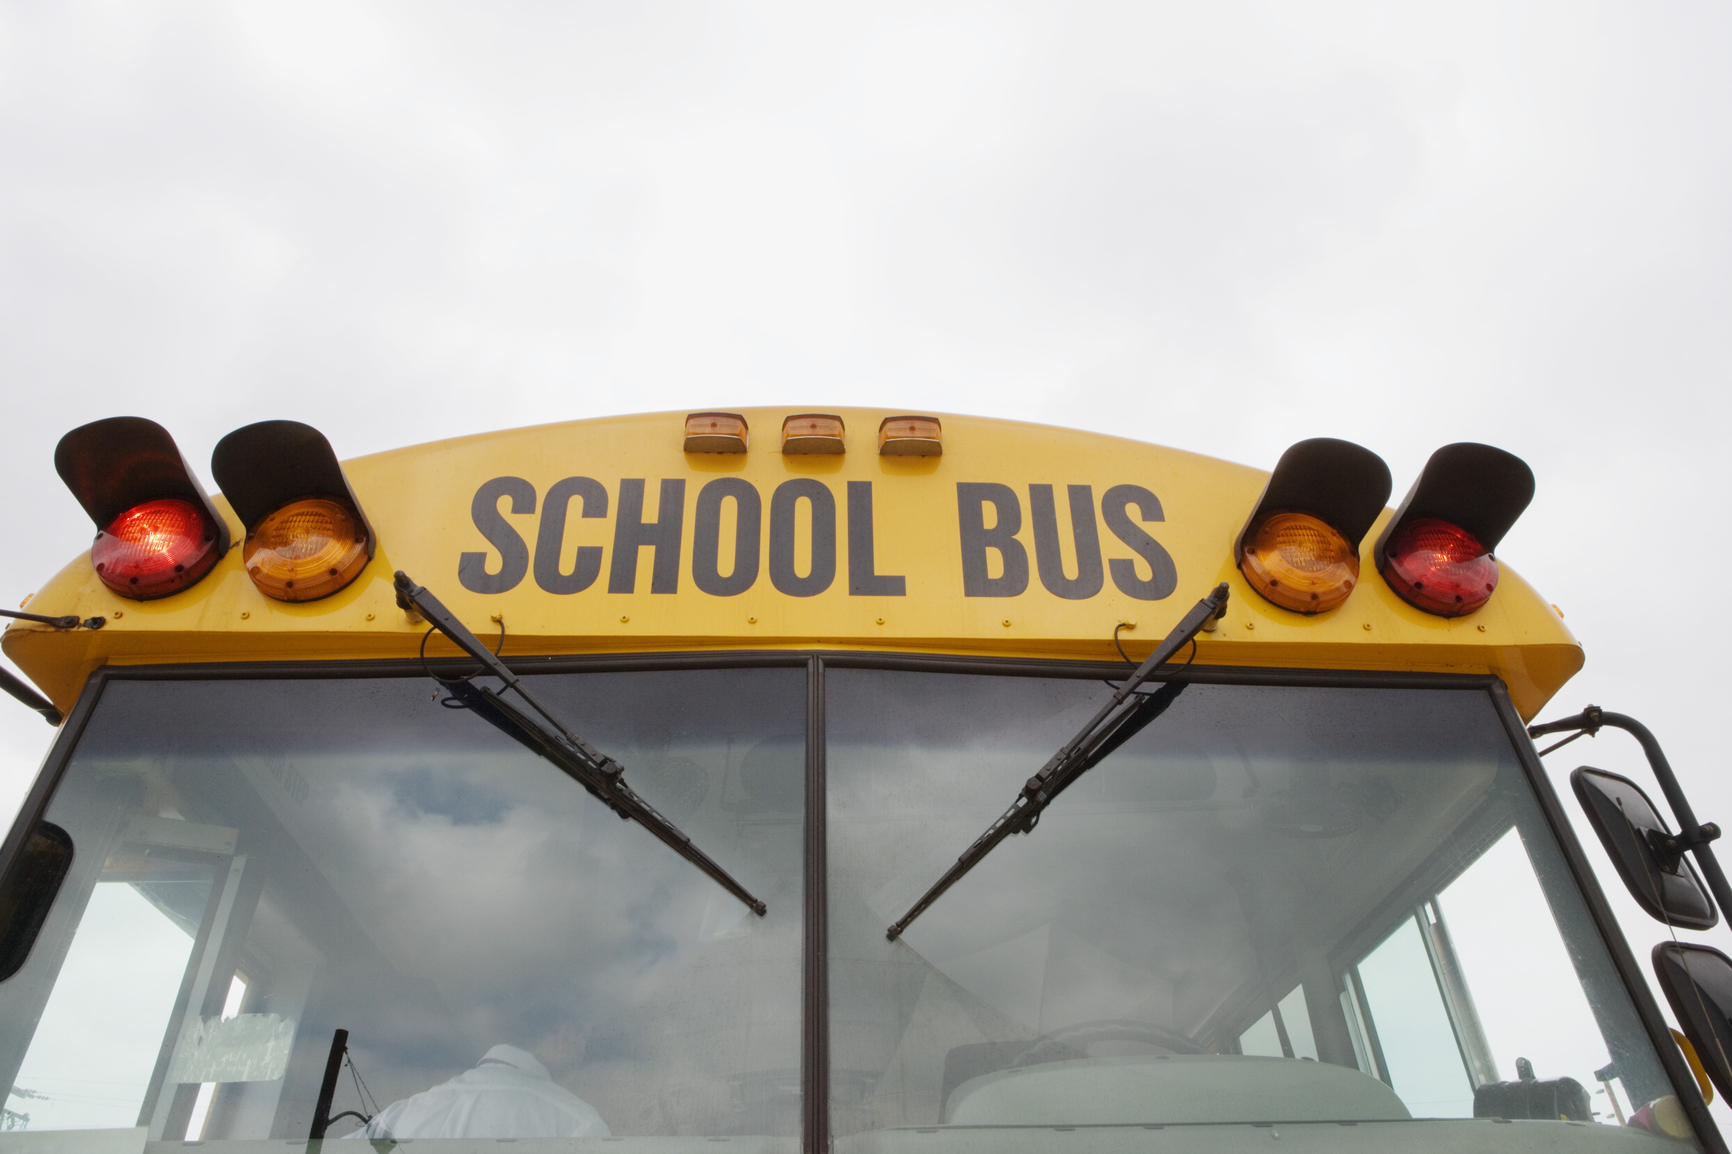 Female school bus stops - 03 poretal-03portal